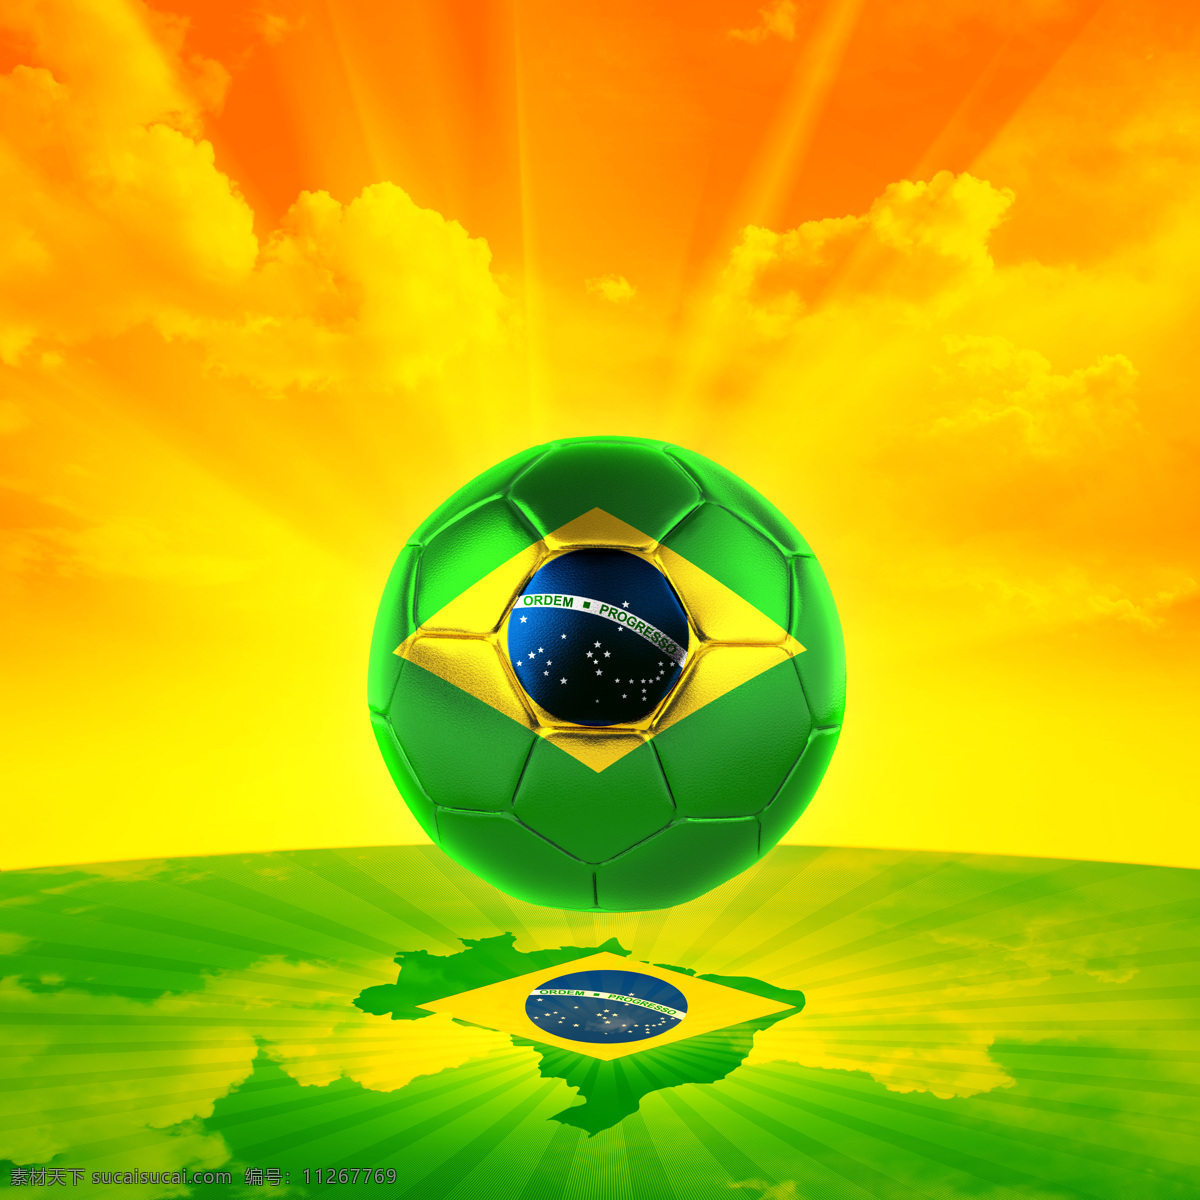 升起 世界杯 标志 足球 地图 阳光 背景 体育运动 生活百科